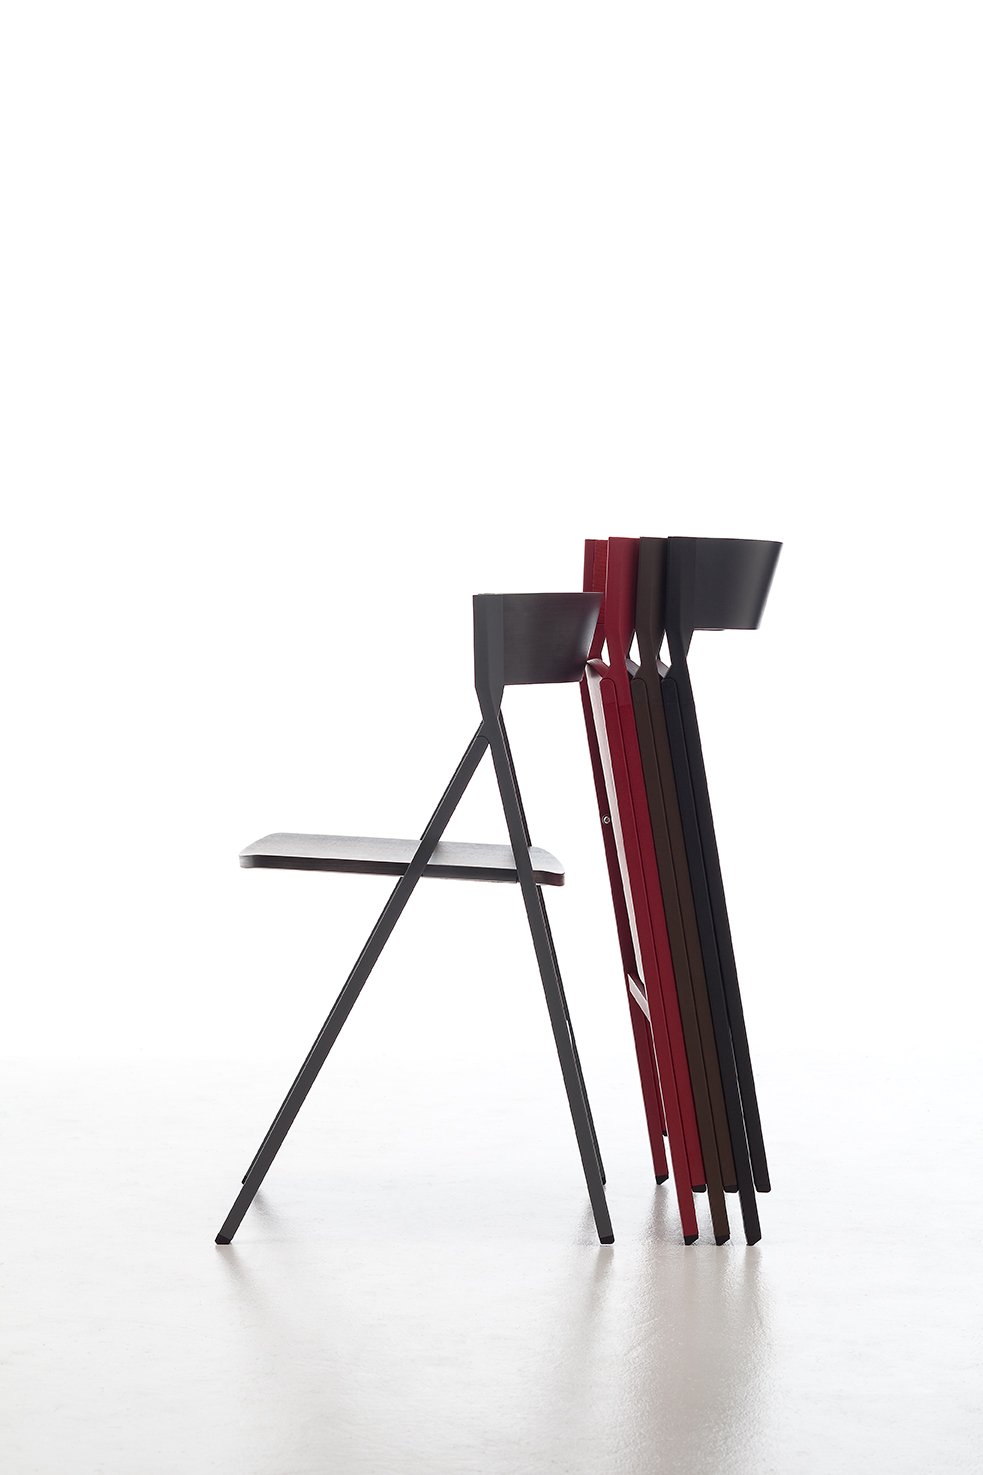 Klapp Folding Chair  from Arrmet, designed by Steffen Kehrle